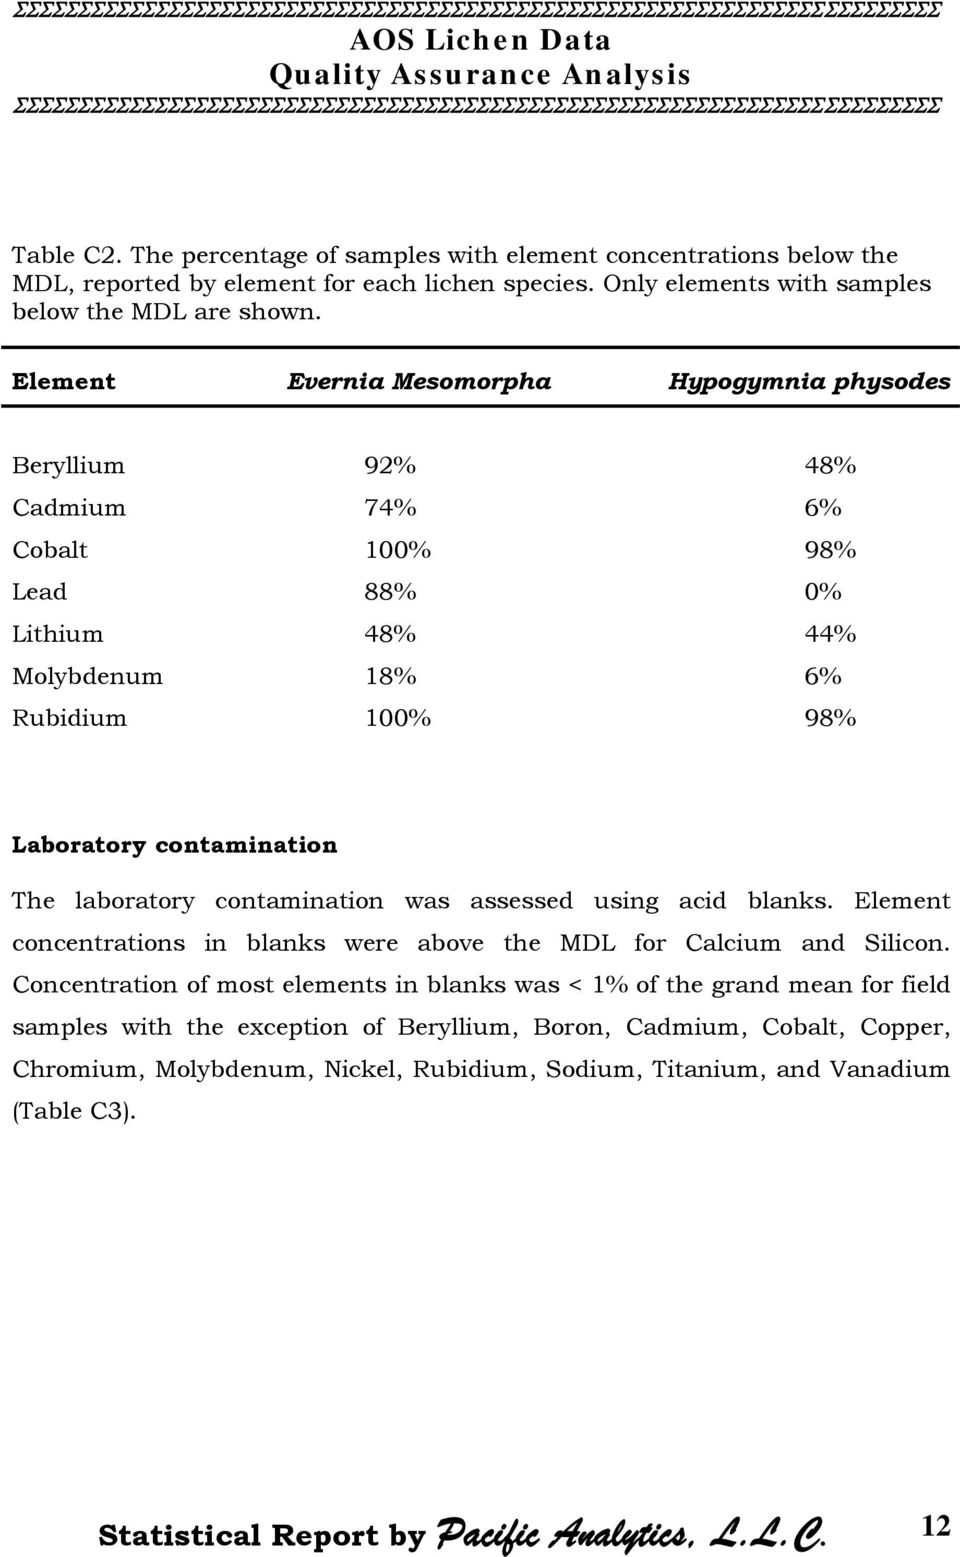 Element Evernia Mesomorpha Beryllium 92% 48% Cadmium 74% 6% Cobalt 100% 98% Lead 88% 0% Lithium 48% 44% Molybdenum 18% 6% Rubidium 100% 98% Laboratory contamination The laboratory contamination was